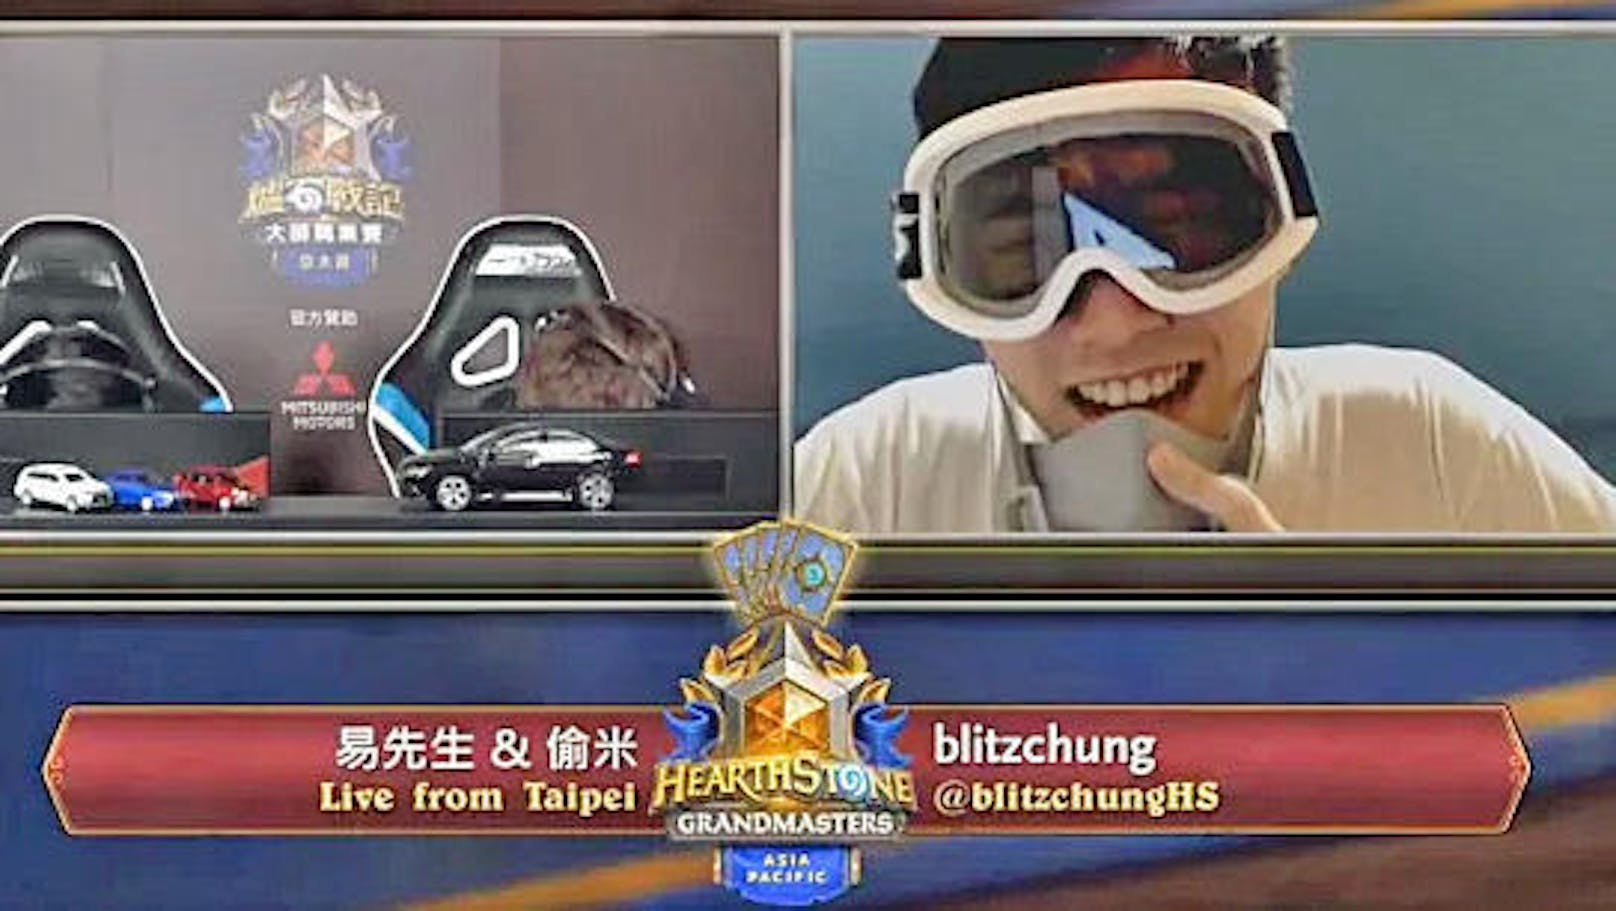 Dies nachdem der E-Sportler Ng Wai "Blitzchung" Chung von Entwickler Blizzard für ein Jahr gesperrt wurde. Er trat zuvor mit Atemmaske und Skibrille in einem taiwanesischen Stream auf und sagte: "Befreit Hongkong, die Revolution unserer Zeit."